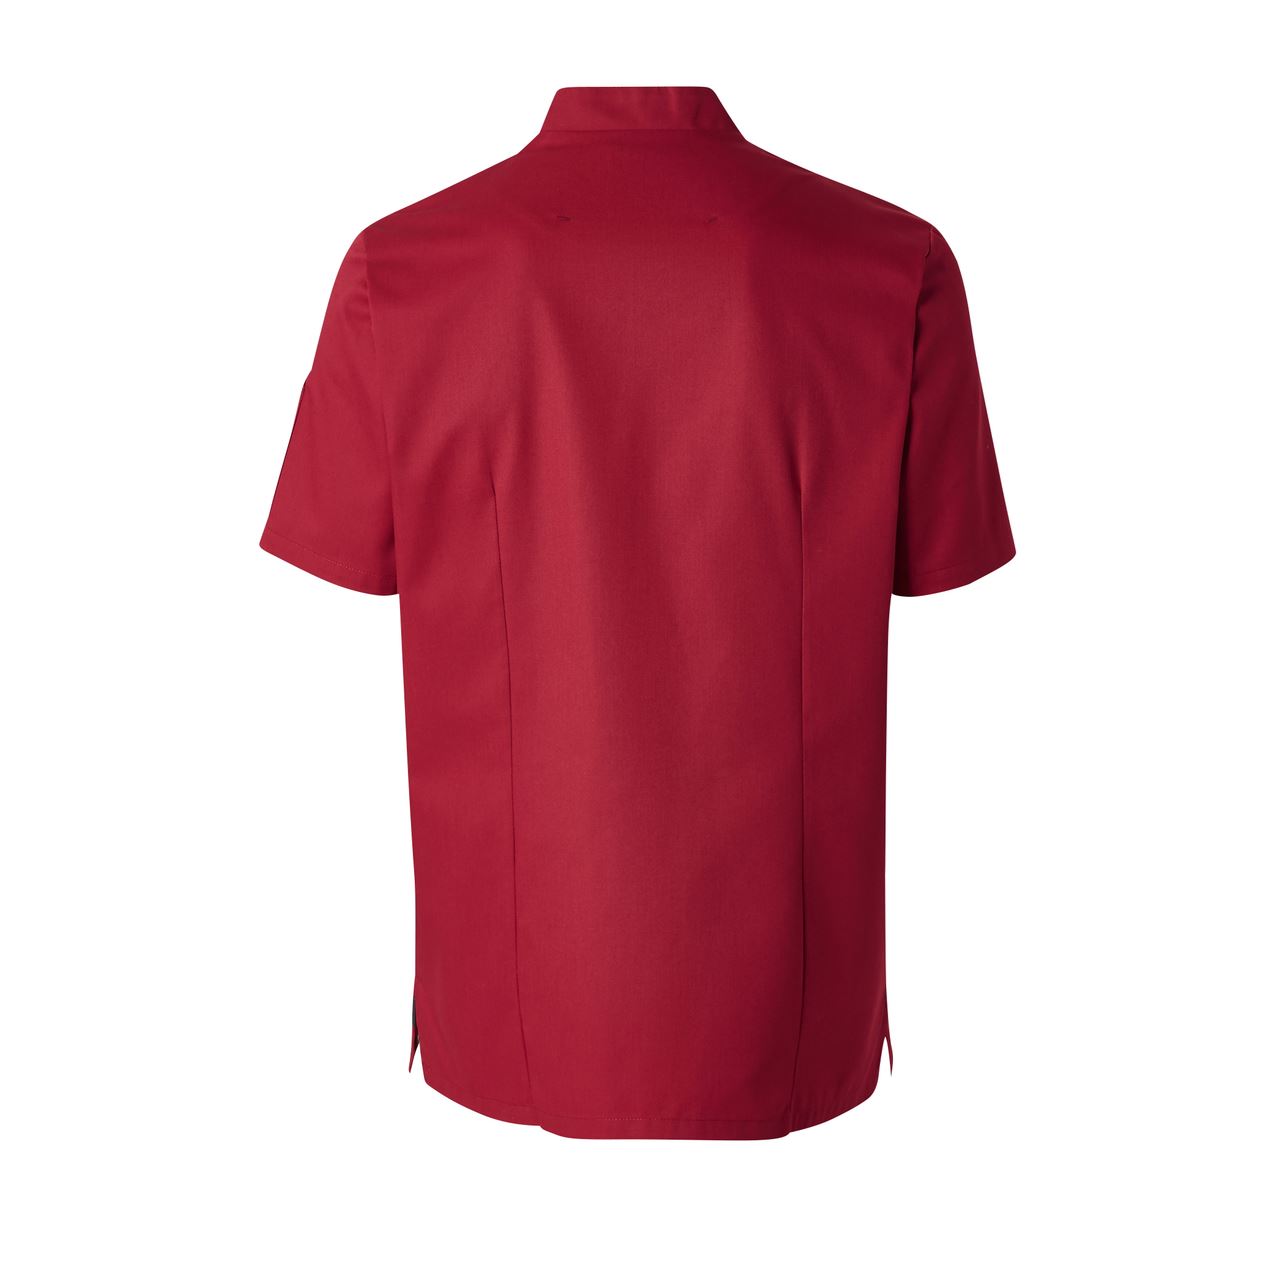 Veste de cuisine manches courtes homme rouge rubis Shade T.XL Molinel